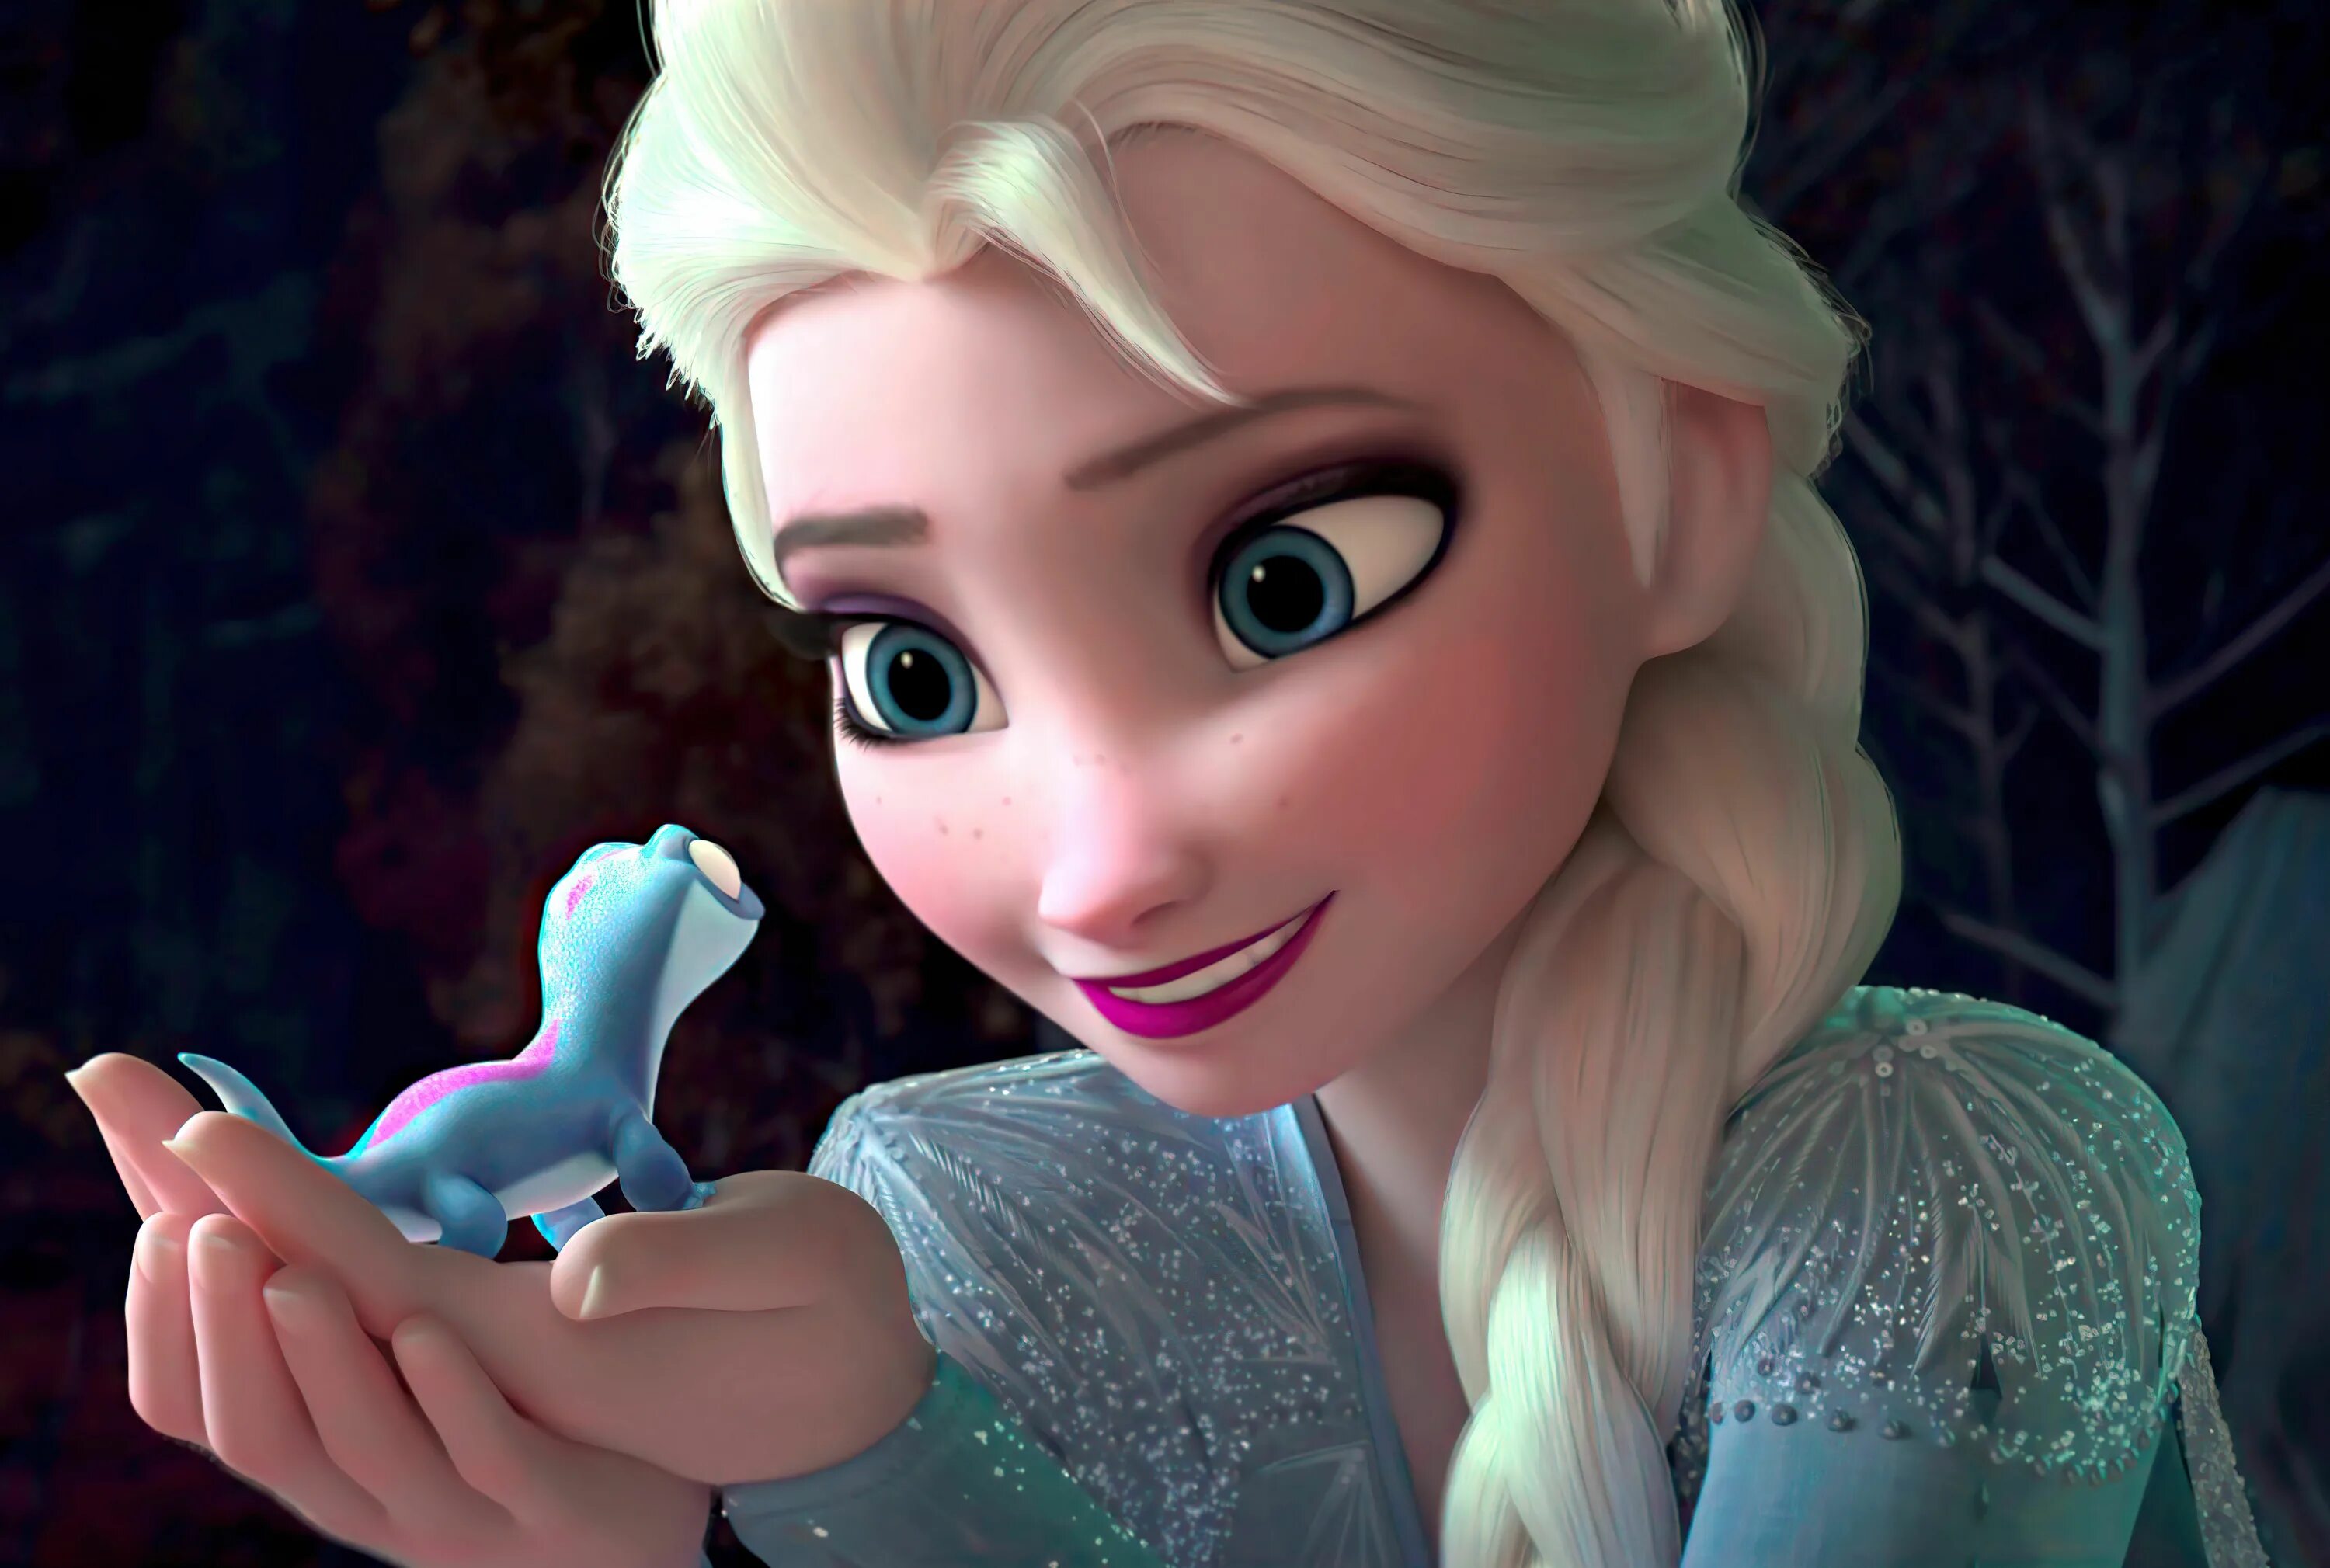 Video frozen. Elsa Холодное сердце 2.